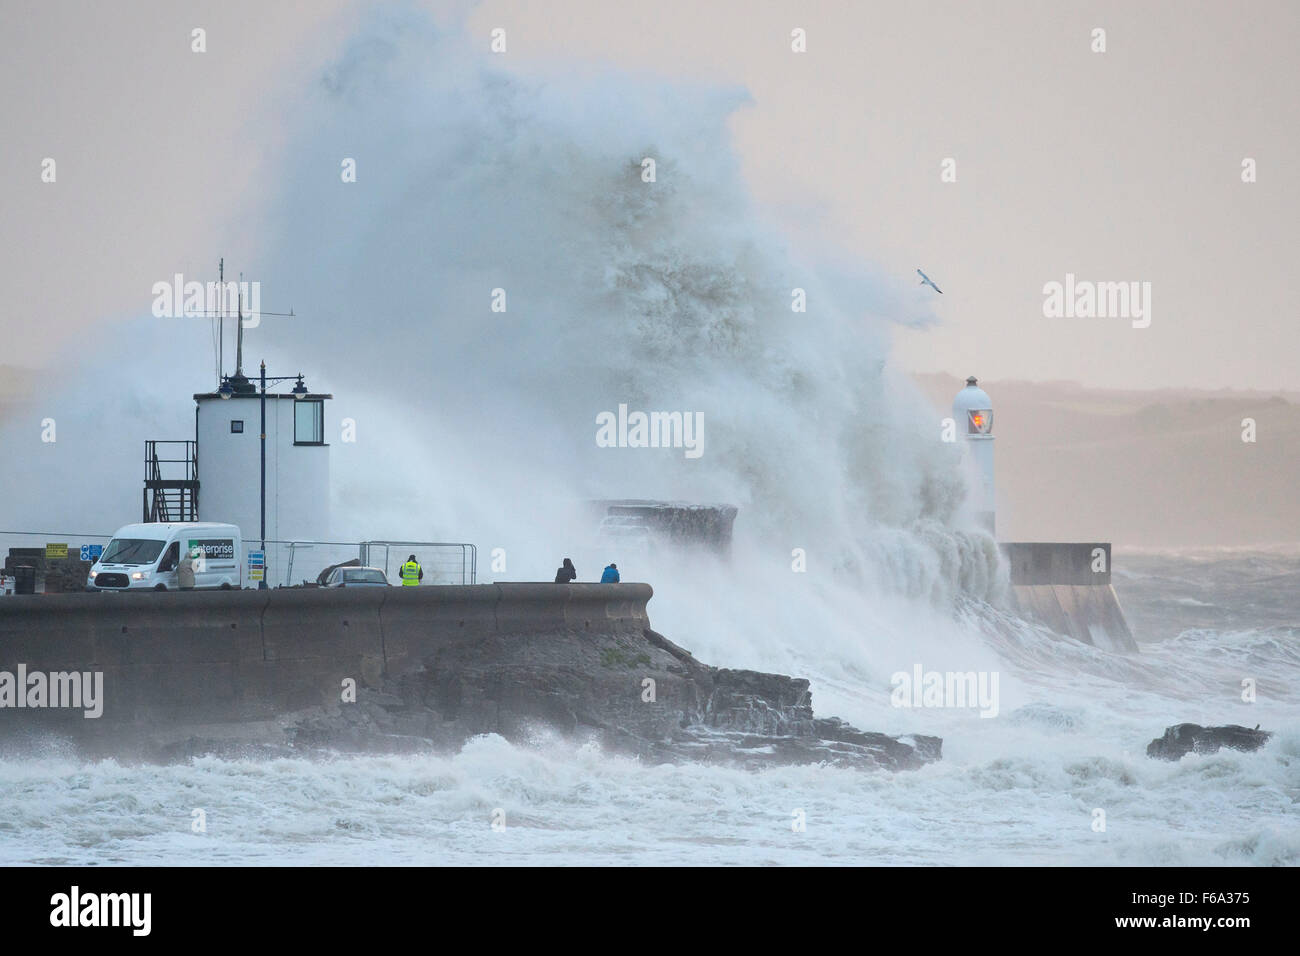 Des vents violents provoquent d'énormes vagues crash sur le phare à bord de Porthcawl, Galles du Sud, comme Barney tempête arrive. Banque D'Images